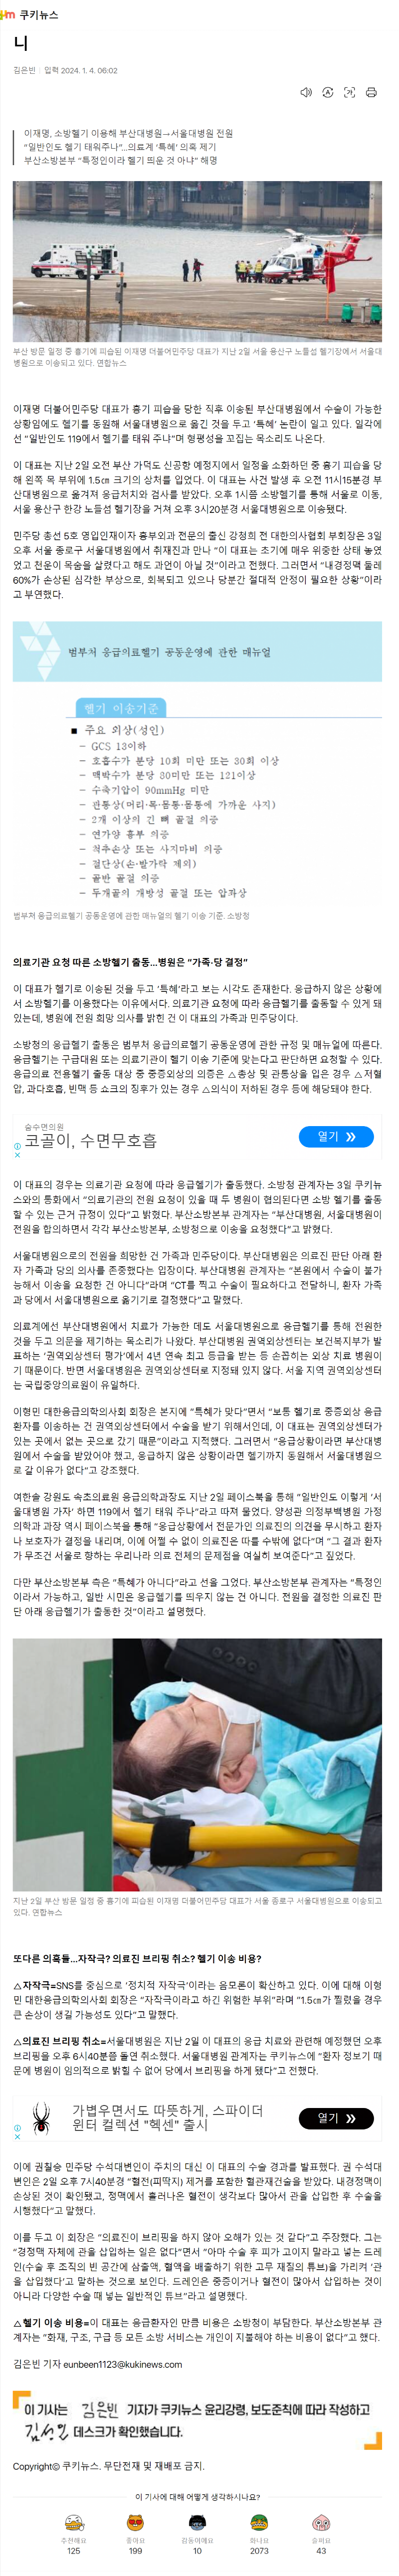 ‘이재명-헬기-이송’-특혜-…응급의료헬기-매뉴얼-보니.png